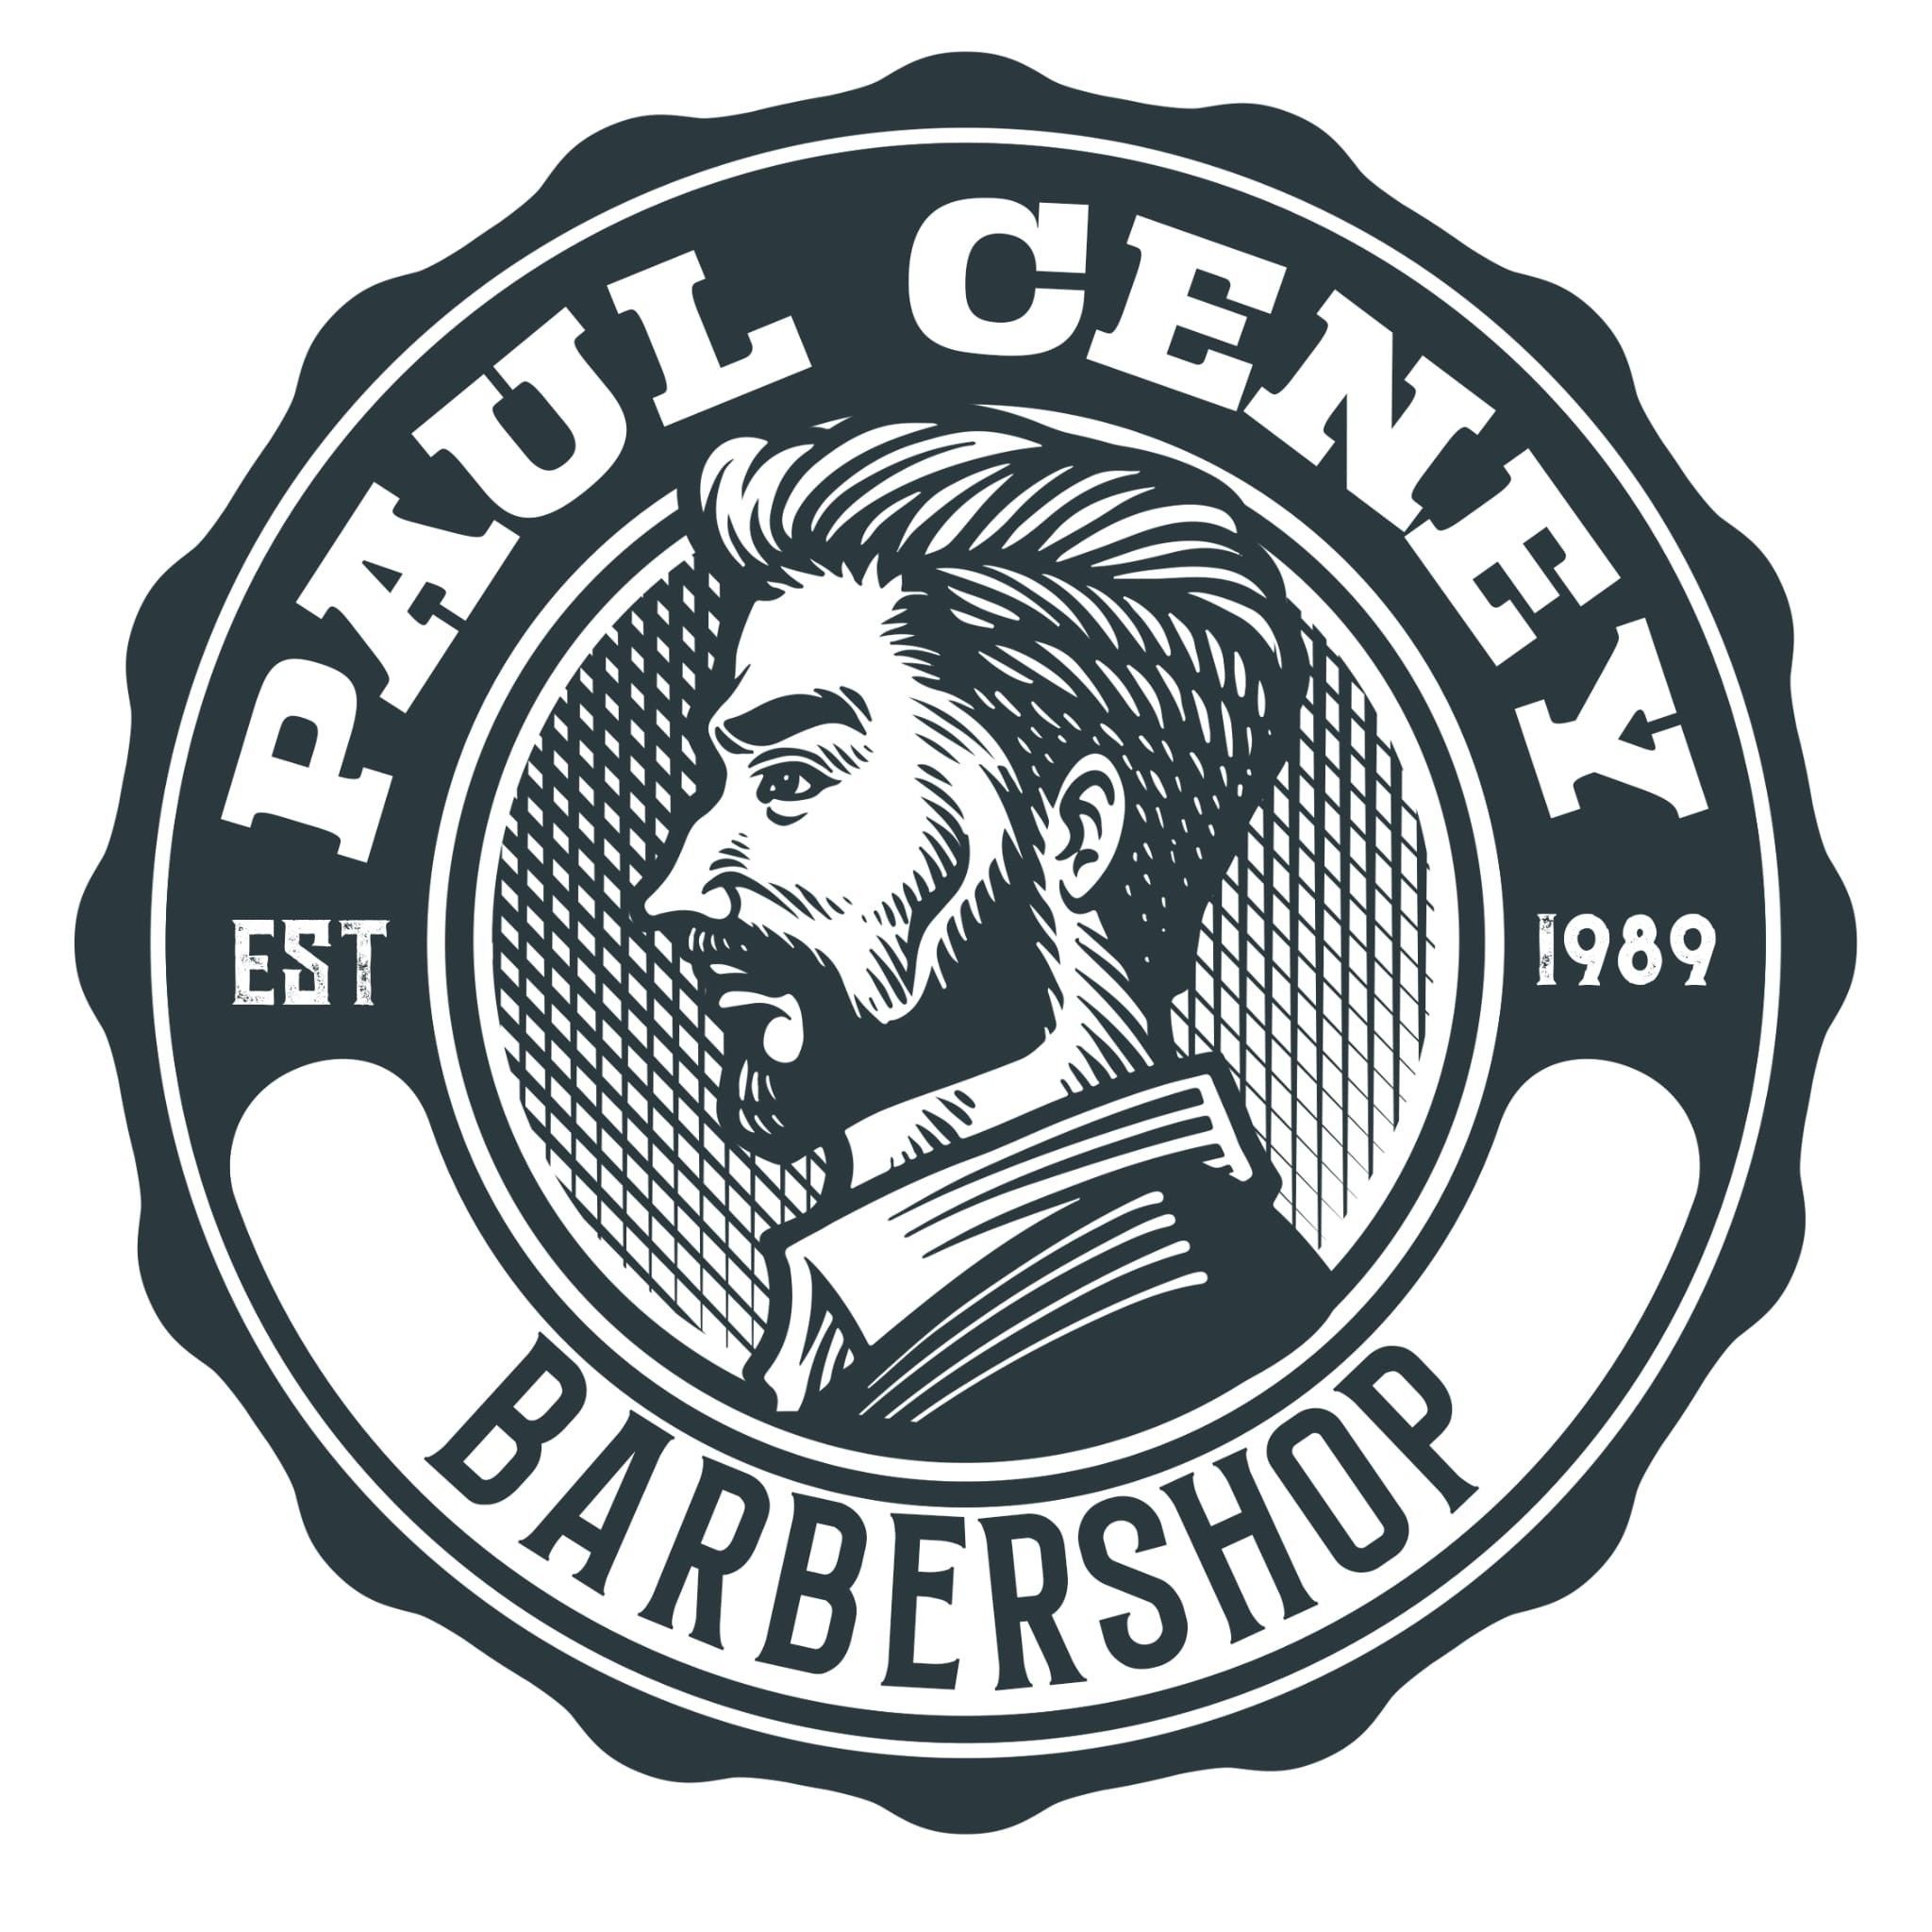 Paul Ceney Barber shop, 55 gorse farm road, B43 5LS, Birmingham, England